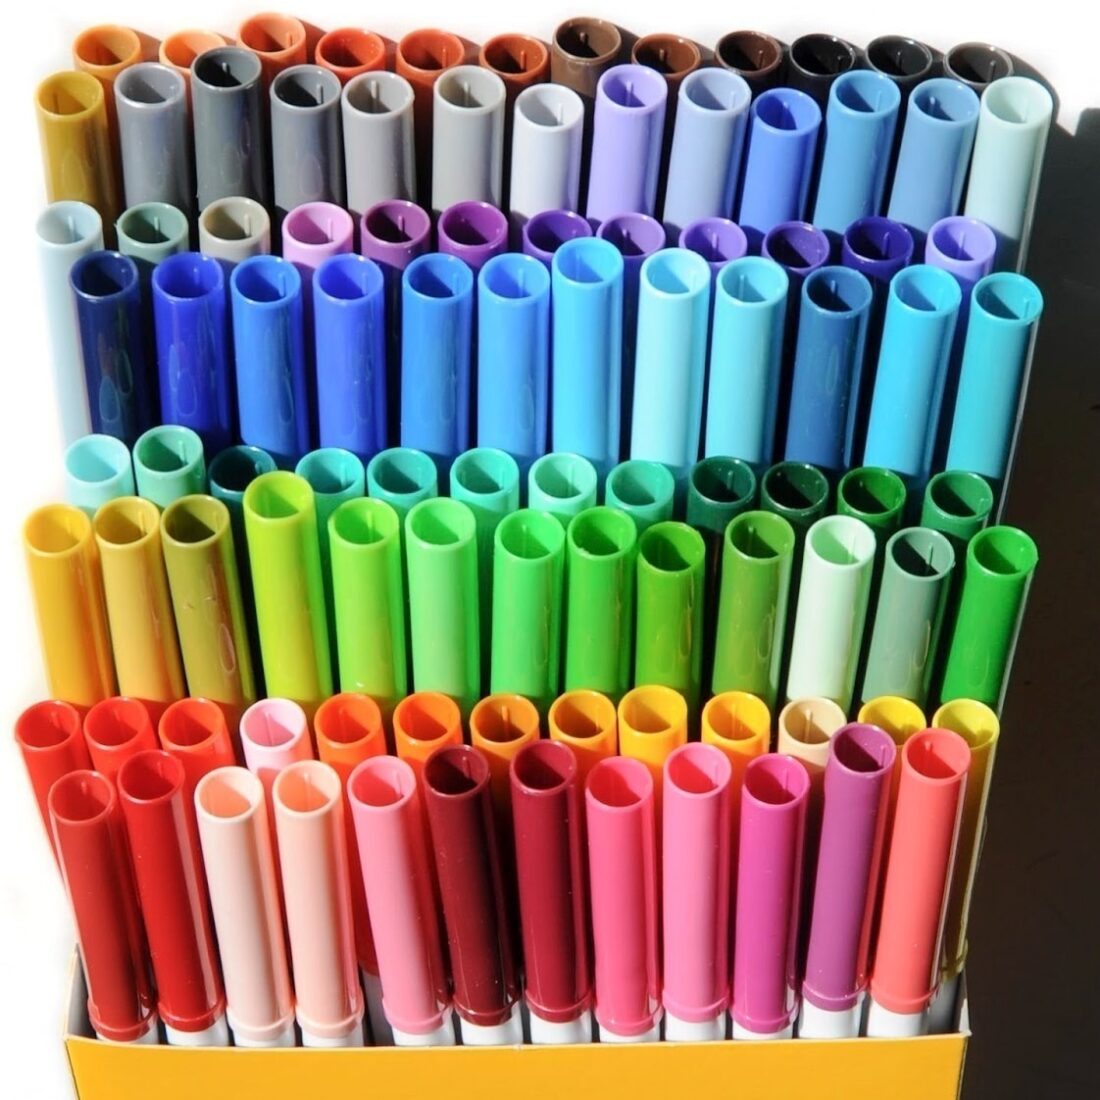 Crayola Marcadores Lavables Super Tips 100 Colores